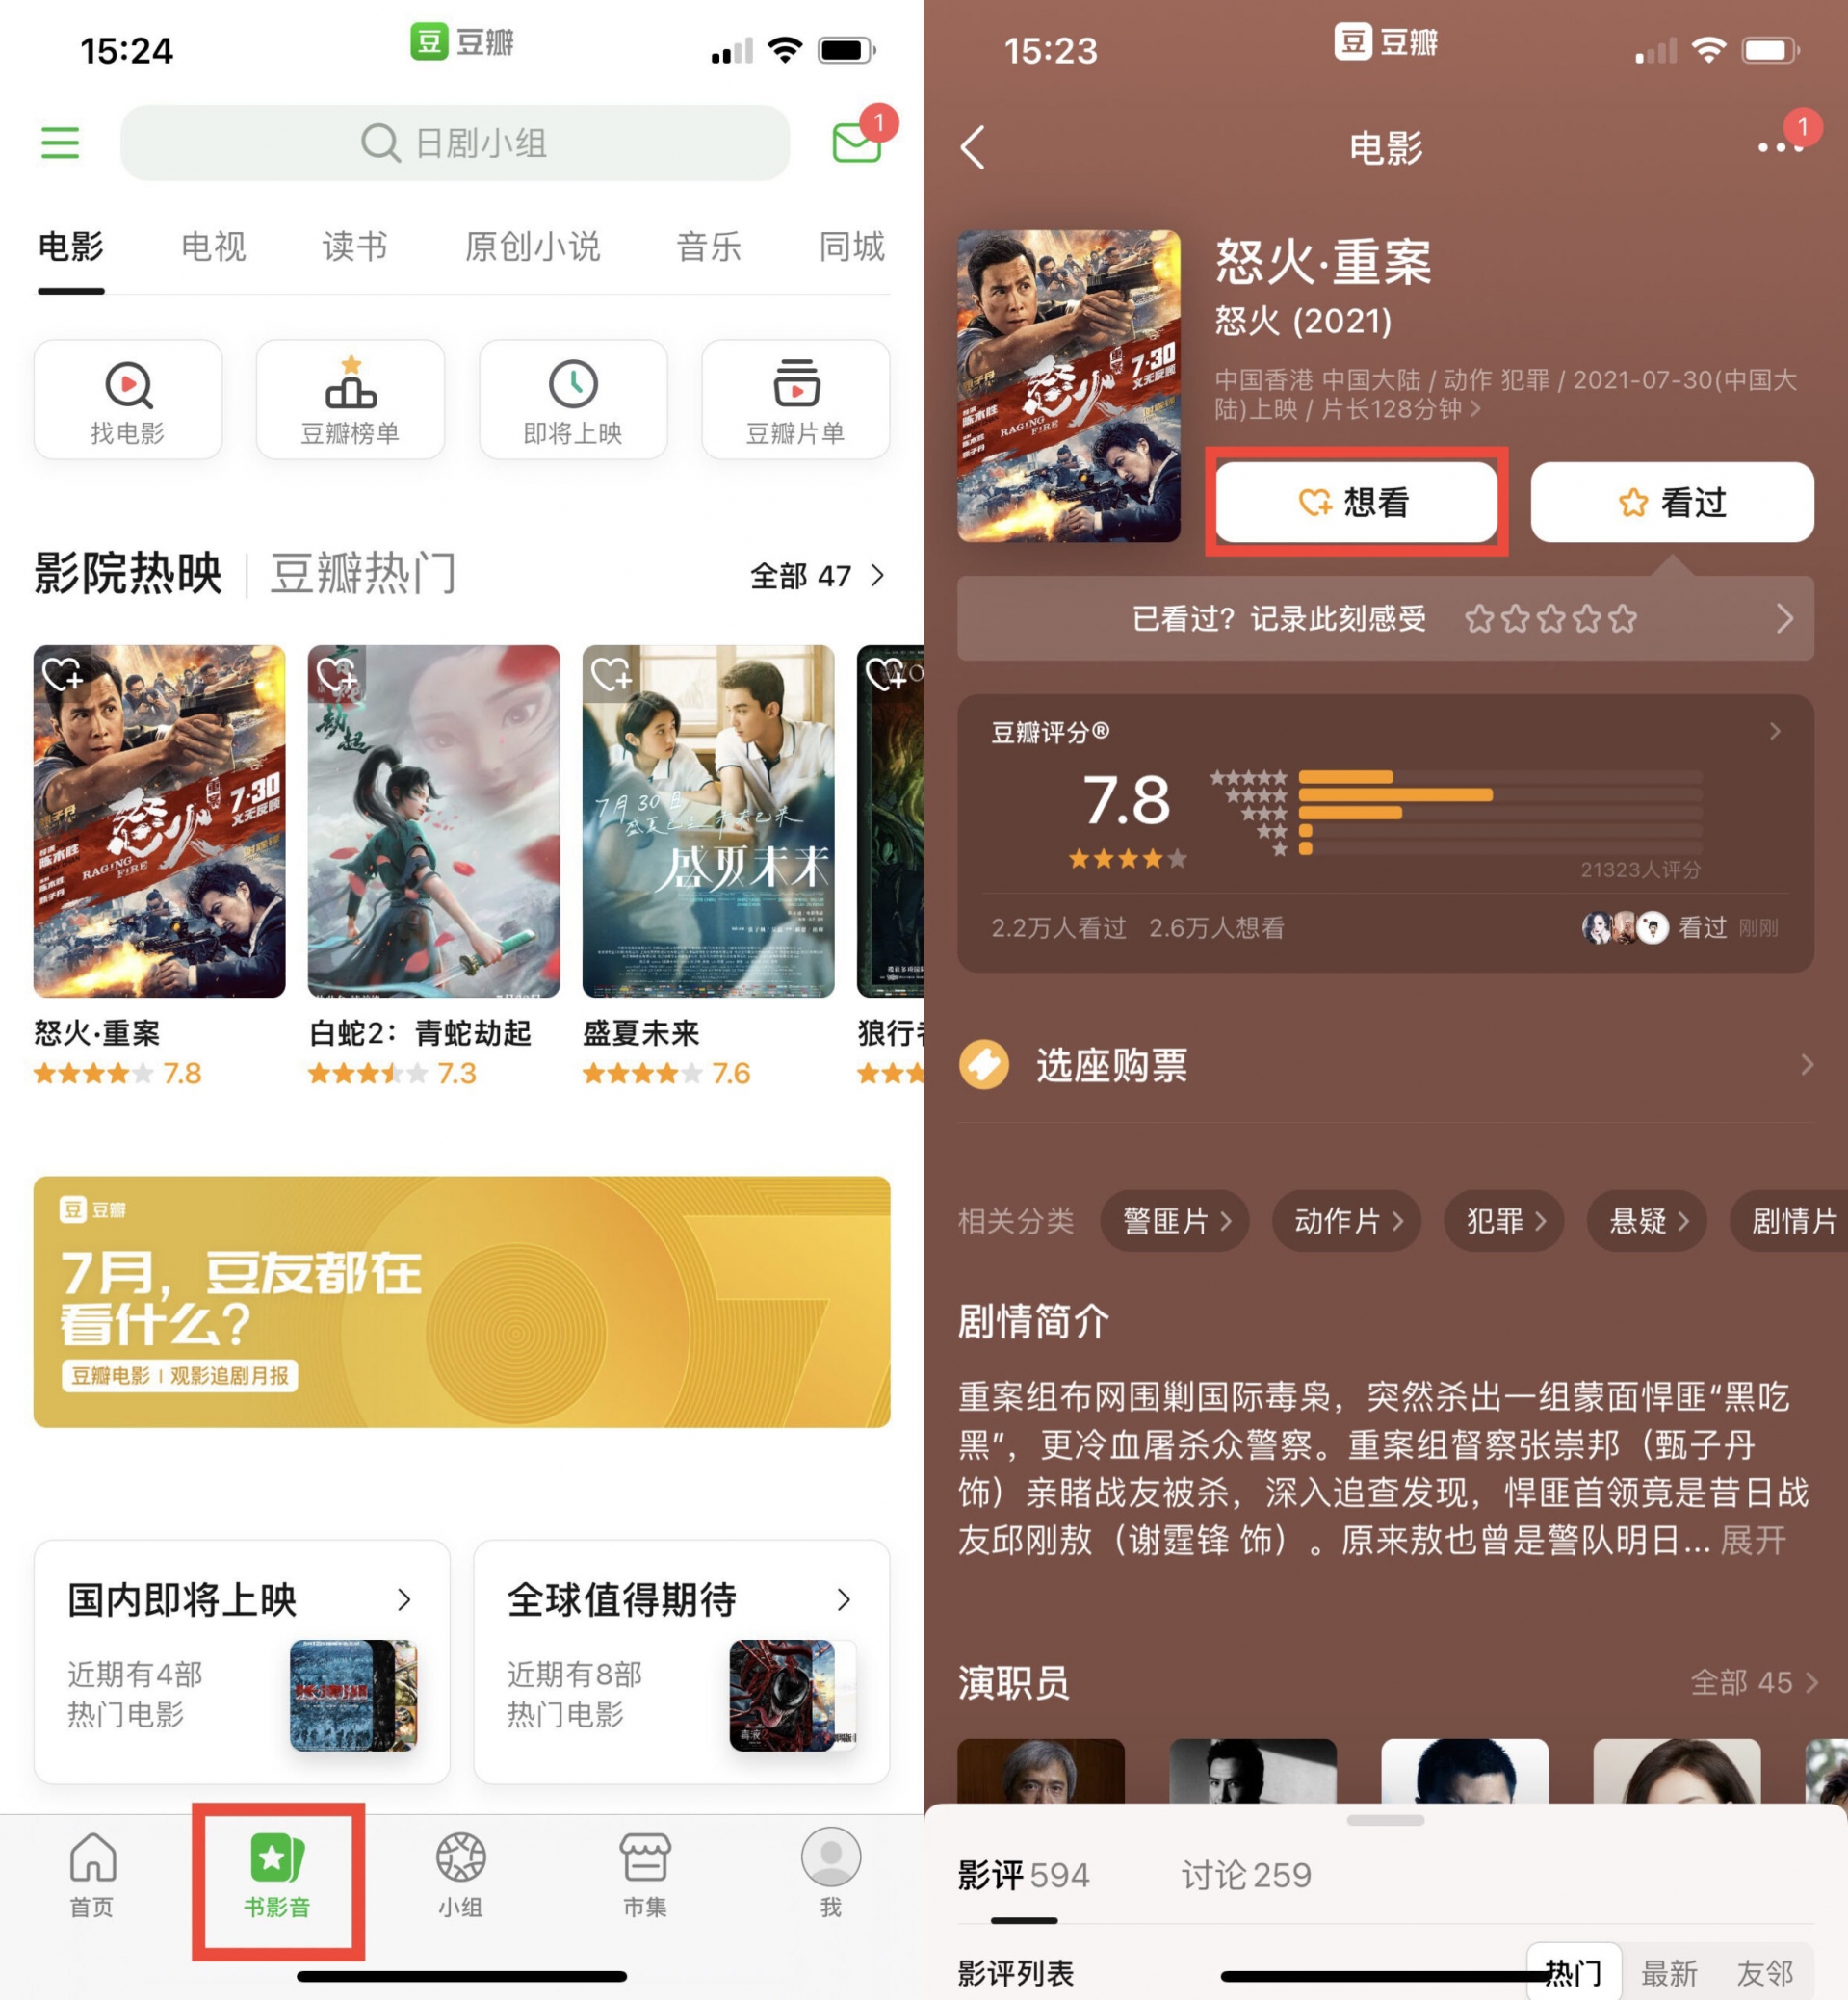 Nền tảng Douban giúp khán giả đánh giá nhiều sản phẩm như phim ảnh, sách truyện...